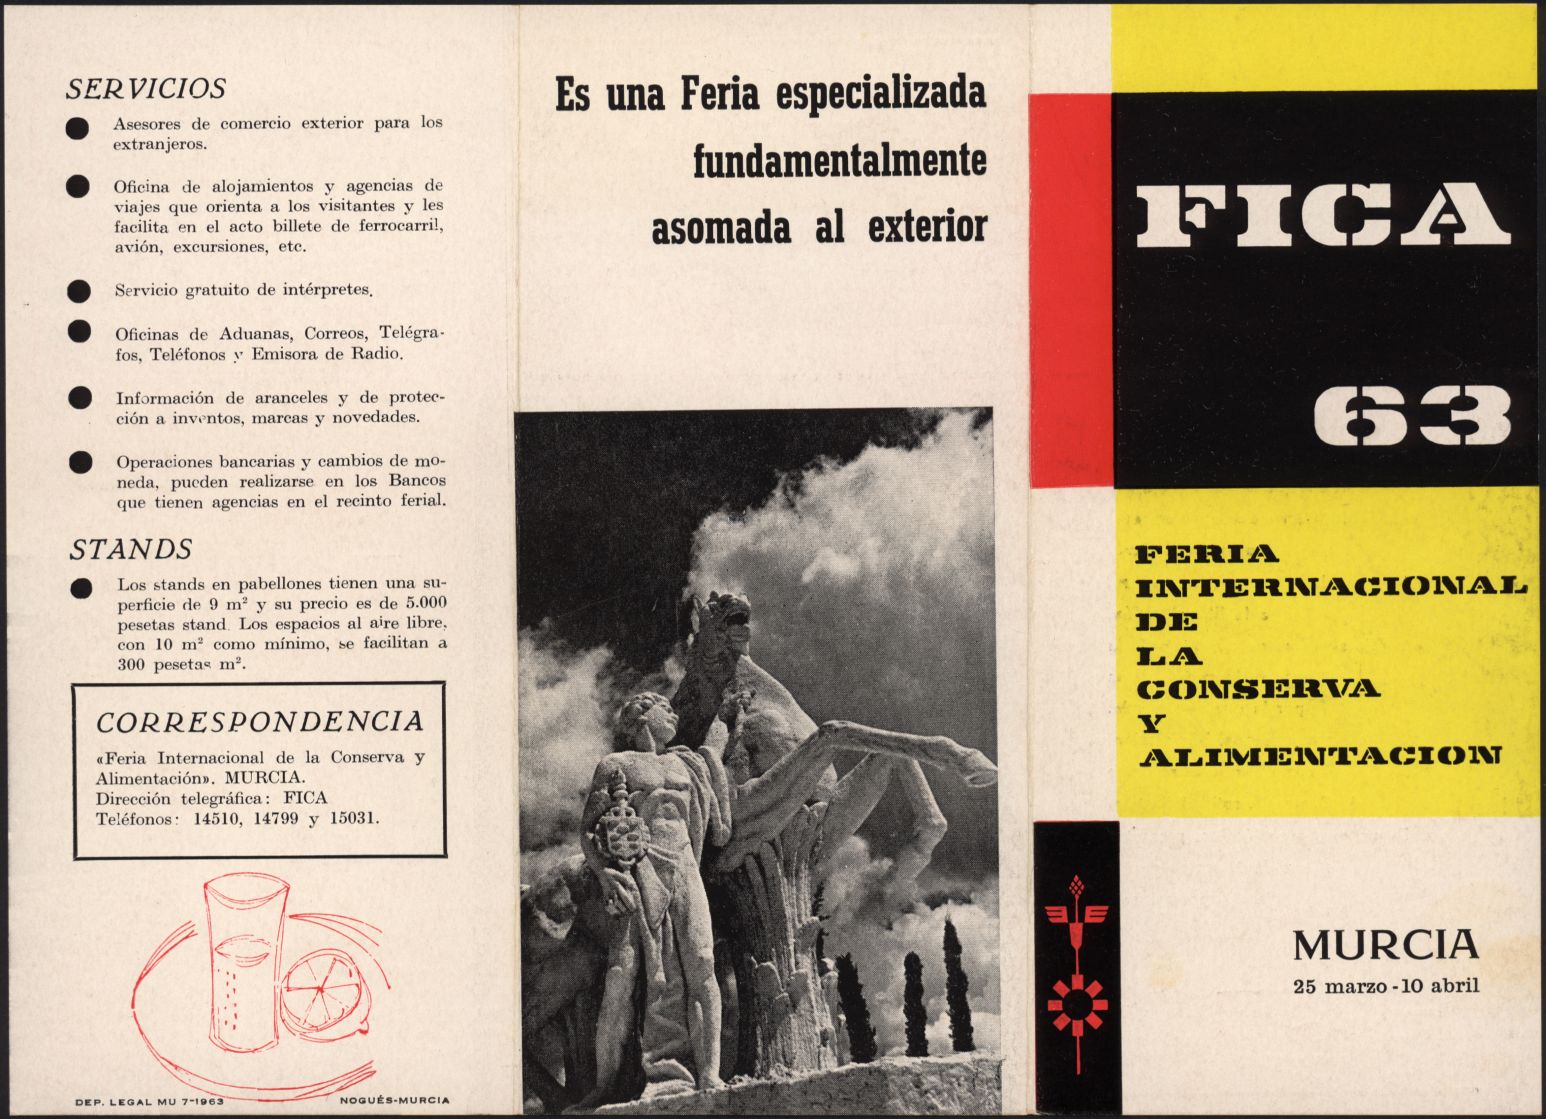 Folletos, invitaciones, cédulas de identidad y postales de la II Feria Internacional de la Conserva y Alimentación. Año 1963.